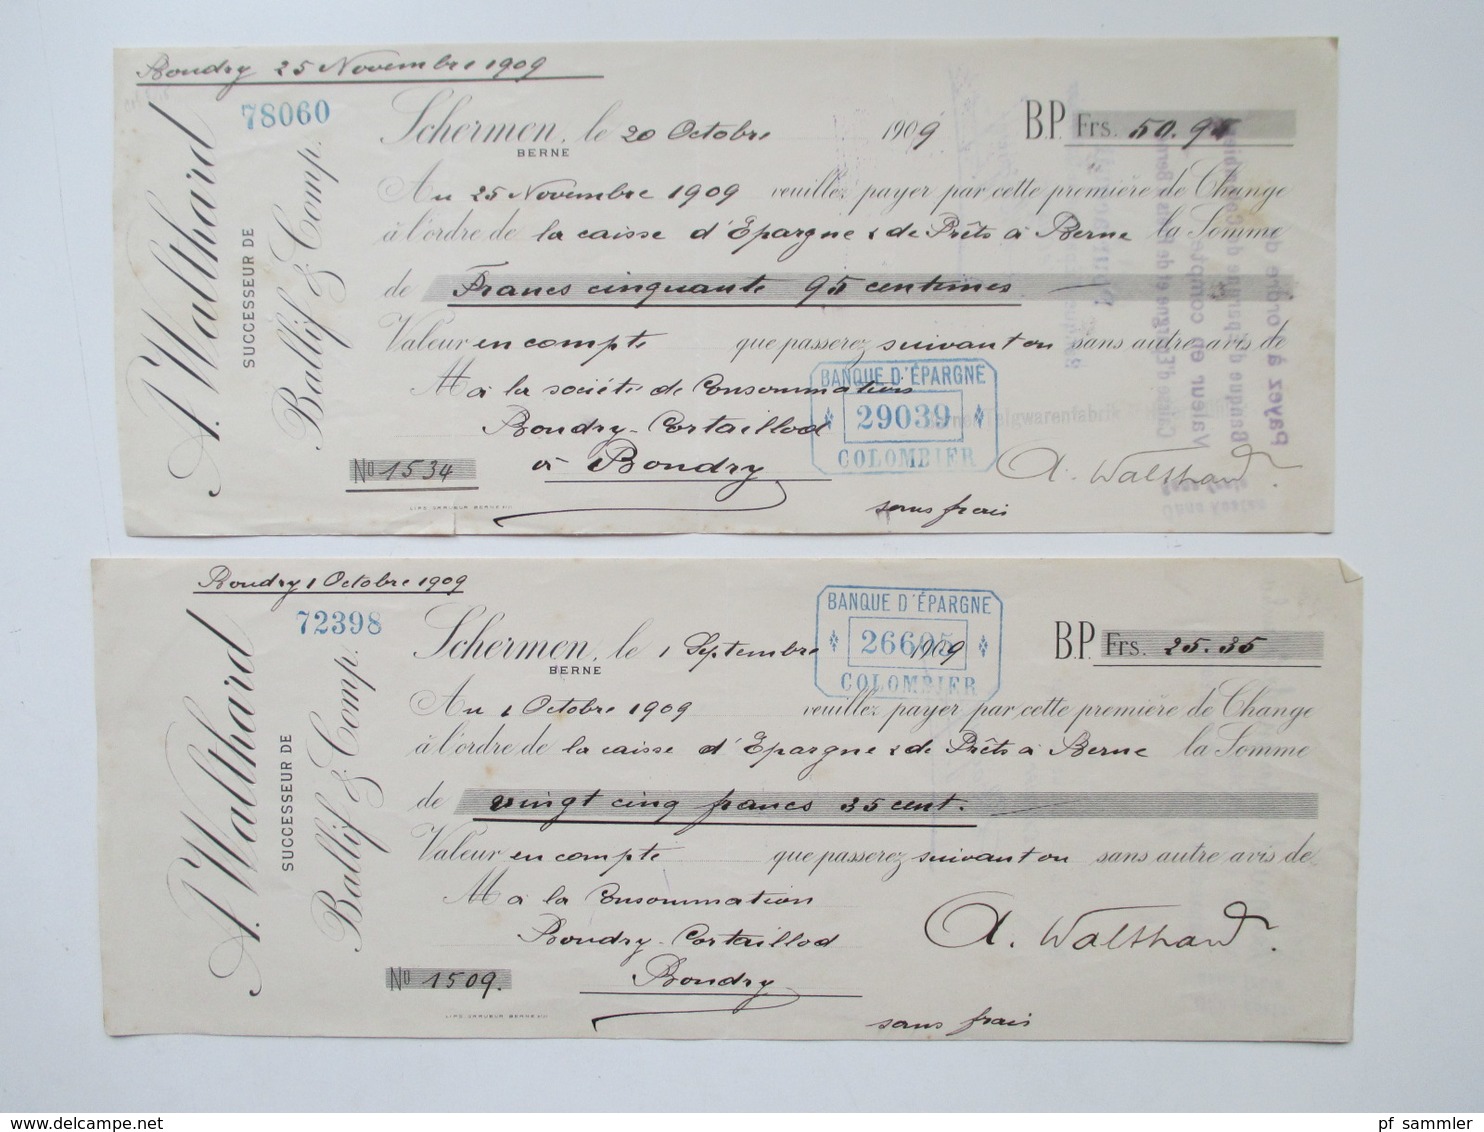 Schweiz 1900 - 1966 Wechsel / Dokumente viele mit Stempelmarken / Fiskalmarken. Insgesamt ca. 100 Stück! Revenues